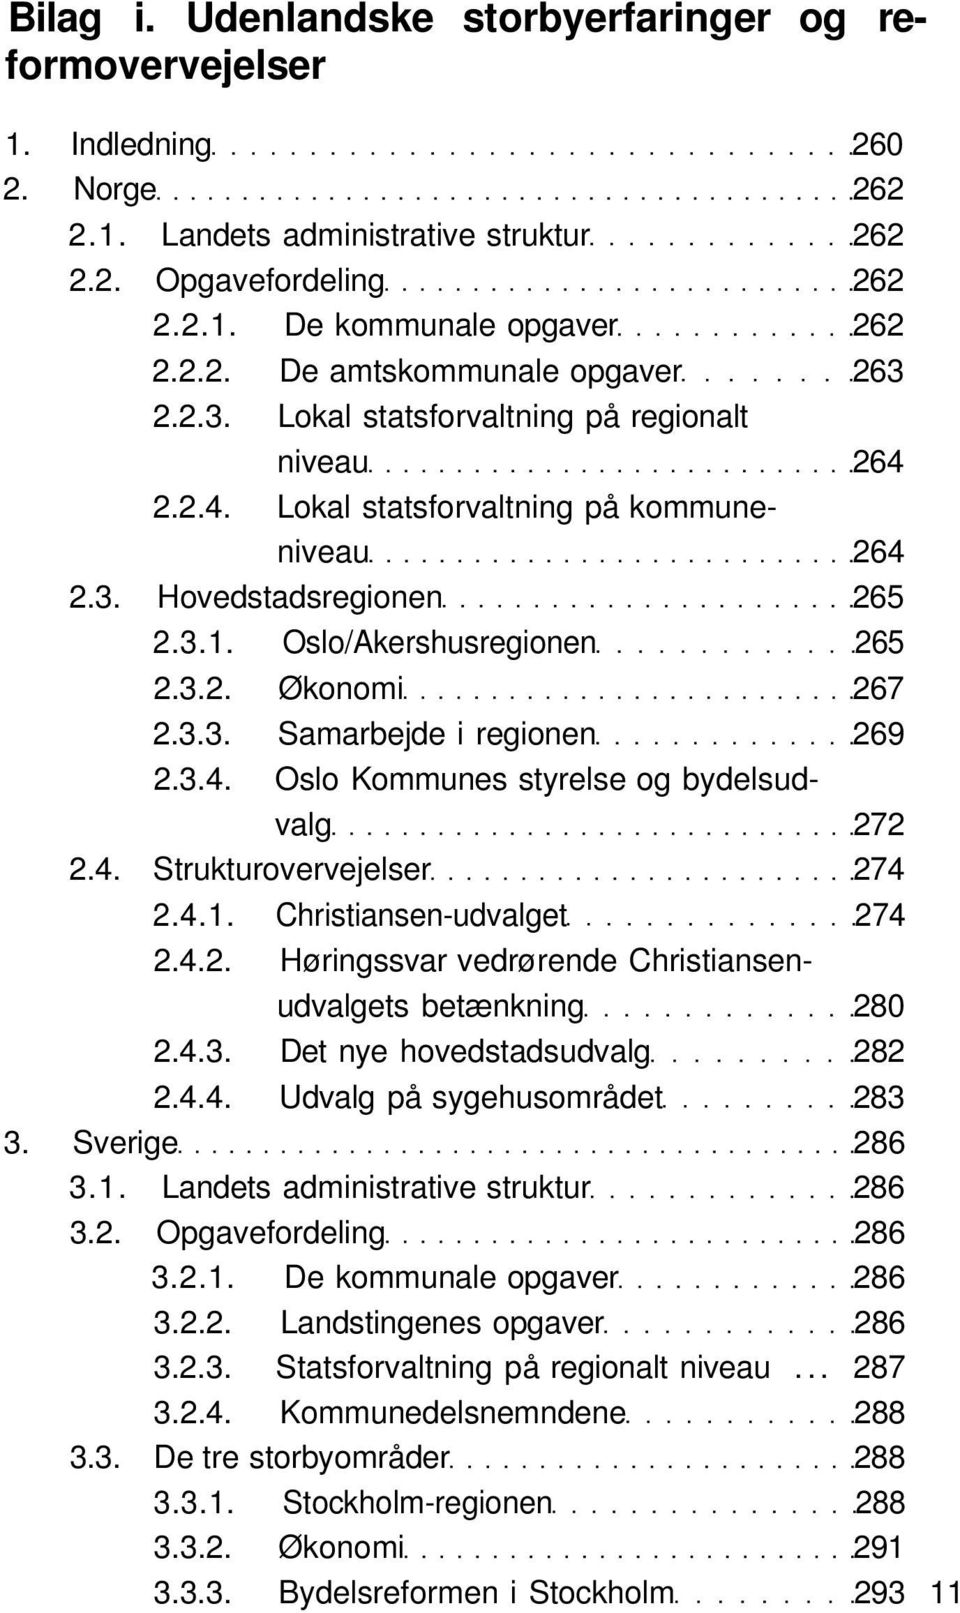 3.4. Oslo Kommunes styrelse og bydelsudvalg 272 2.4. Strukturovervejelser 274 2.4.1. Christiansen-udvalget 274 2.4.2. Høringssvar vedrørende Christiansenudvalgets betænkning 280 2.4.3. Det nye hovedstadsudvalg 282 2.